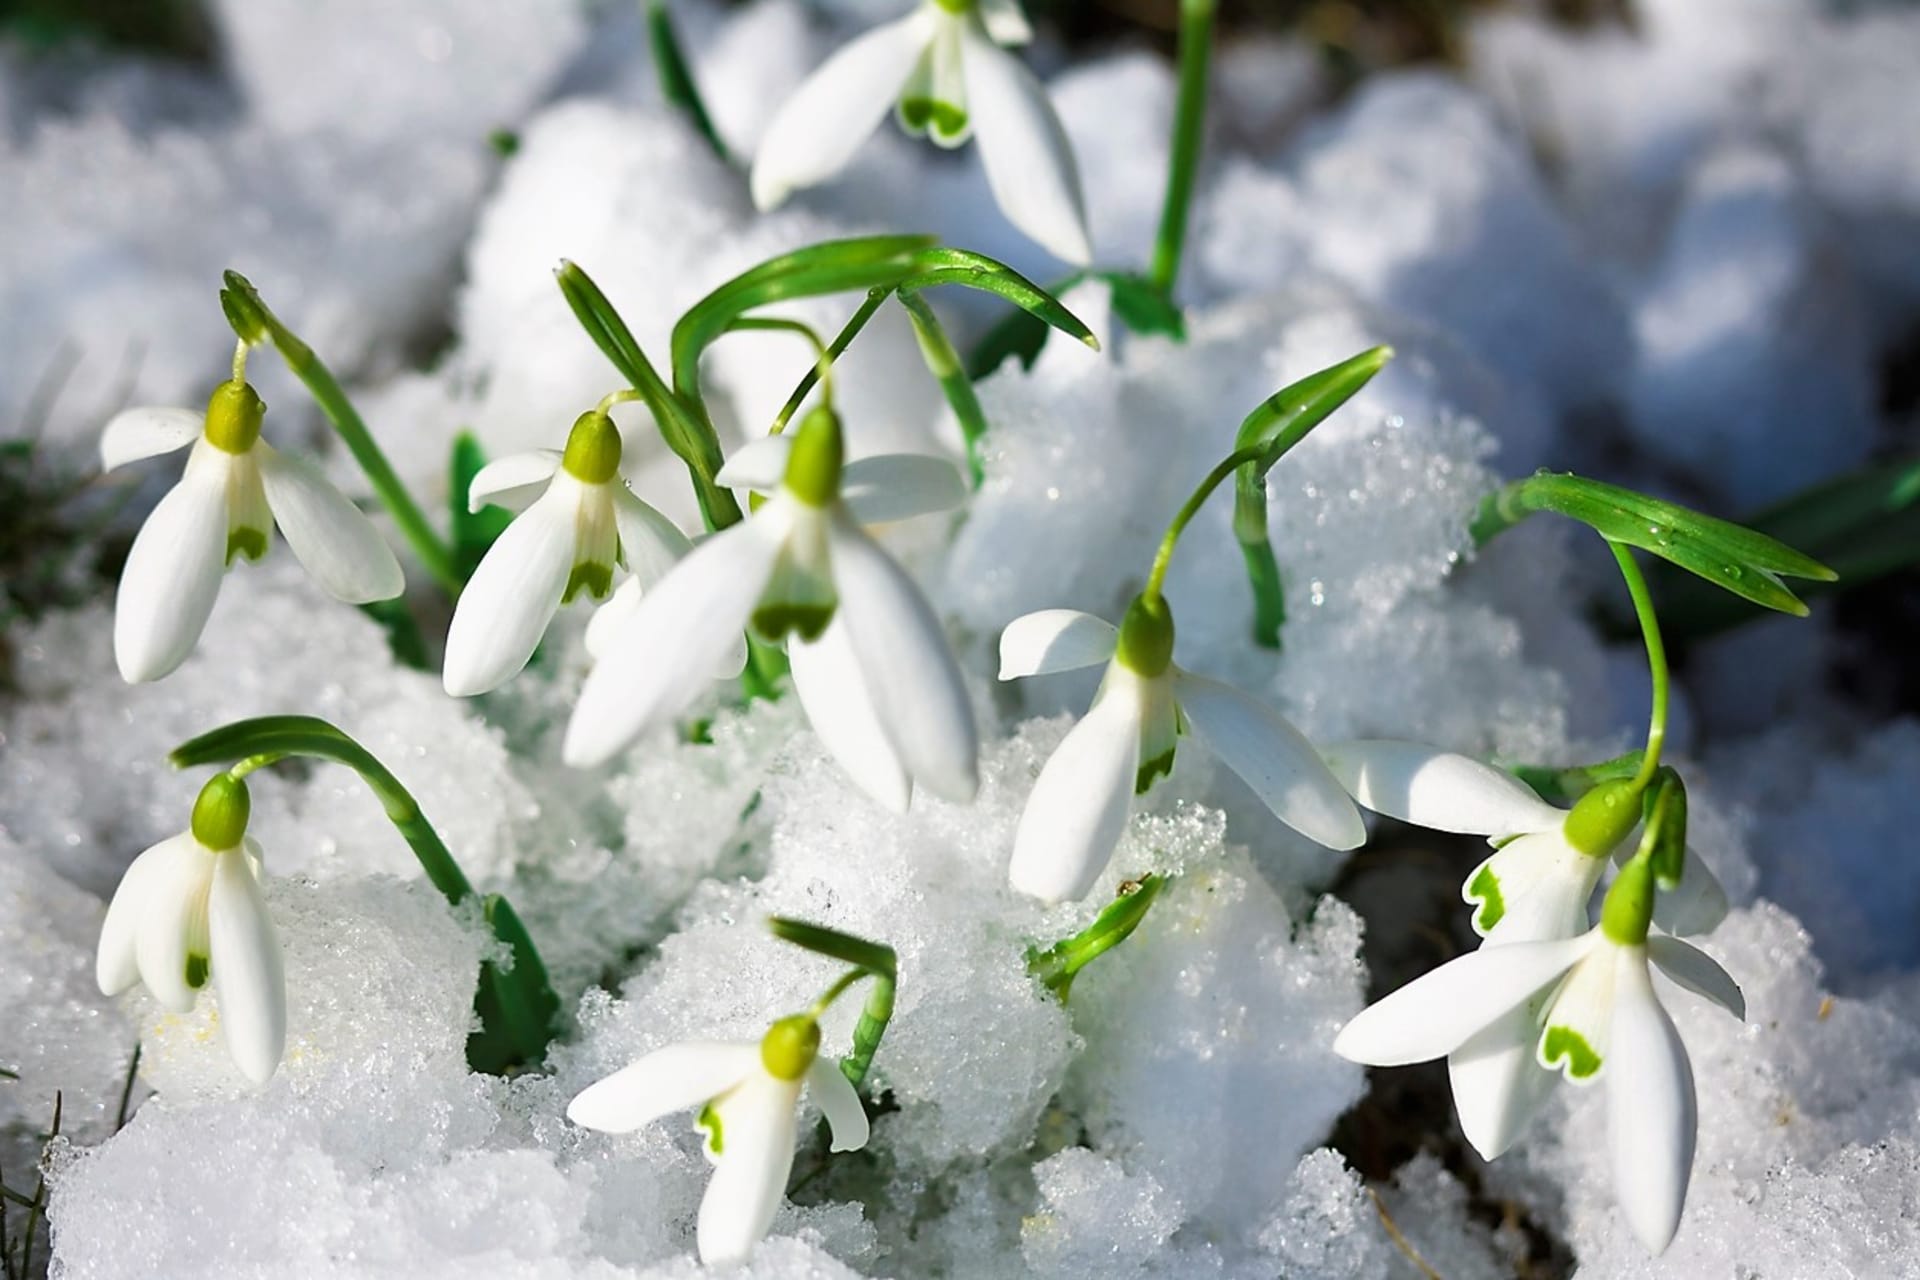 Snežienky (snowdrops / Galanthus nivalis) prichádzajú na zimnú scénu veľmi skoro. Vo februári, niekedy už v januári, ukazujú svoje biele zvončekovité kvety, ktoré rastú aj na snehu.